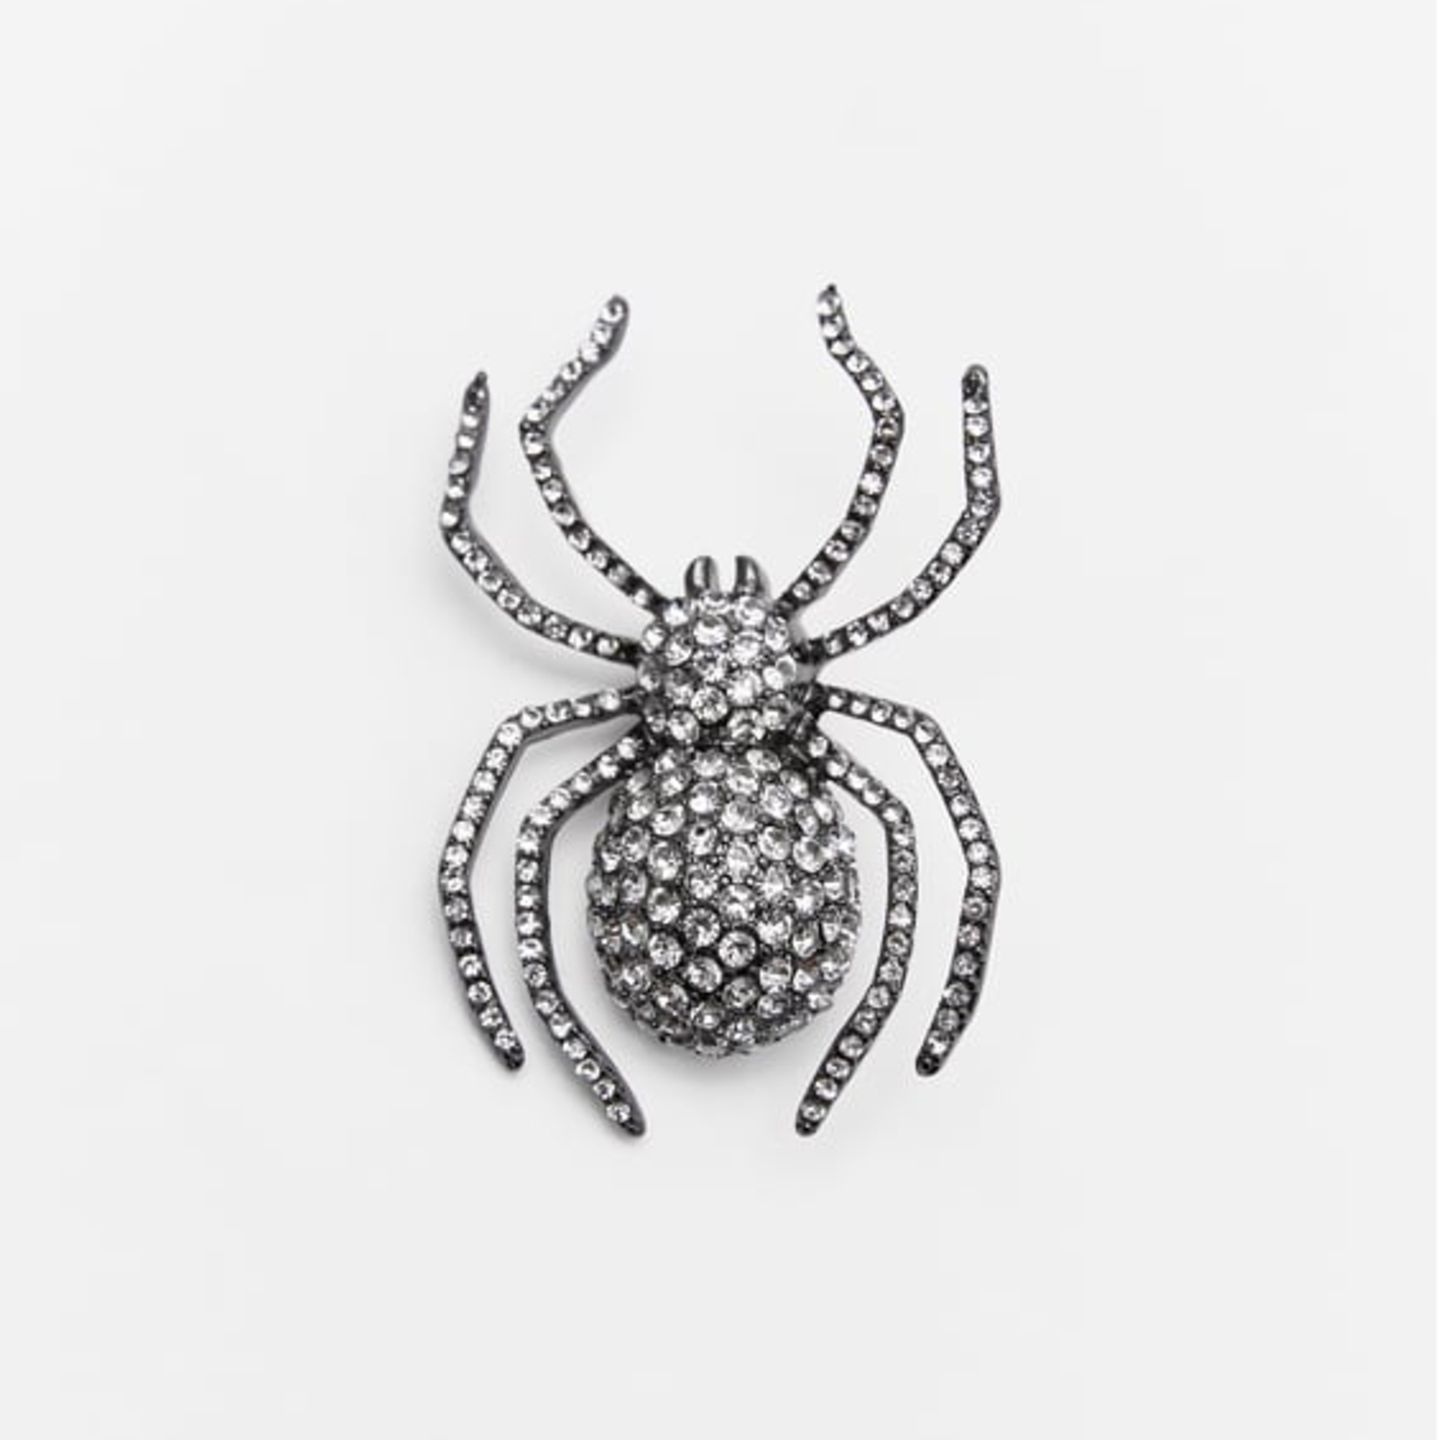 Die mit Strasssteinen besetzte Brosche in Spinnenform wertet selbst das schlichteste Outfit auf – Gruselfaktor inklusive. Von Zara, ca. 13 Euro.